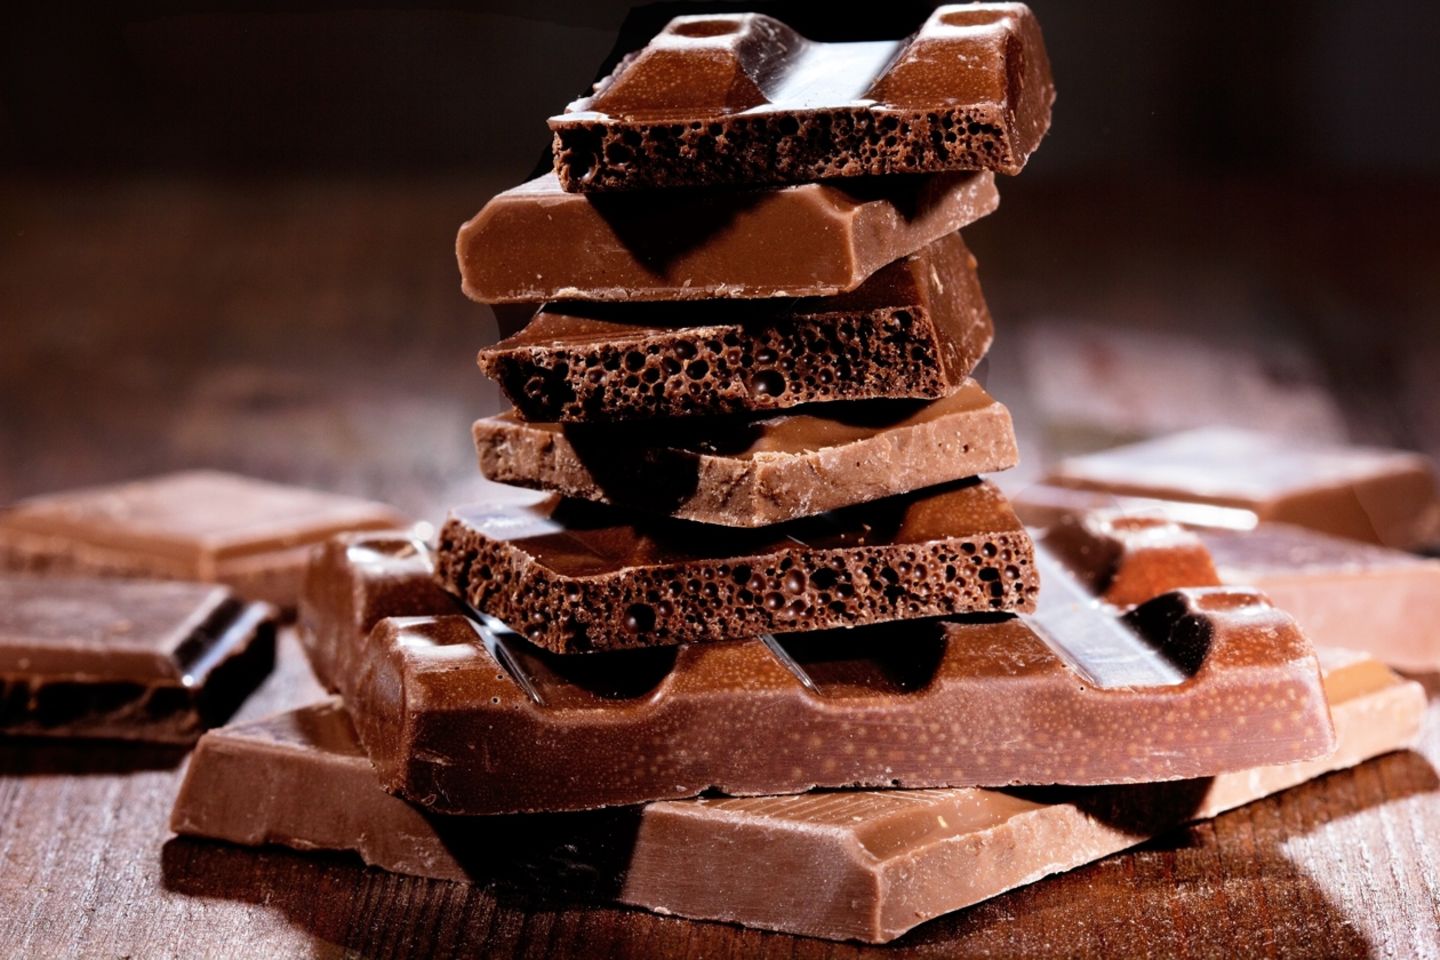 Die Grossten Schokoladenhersteller Sagen Dass Uns Die Schokolade Ausgehen Wird Stern De